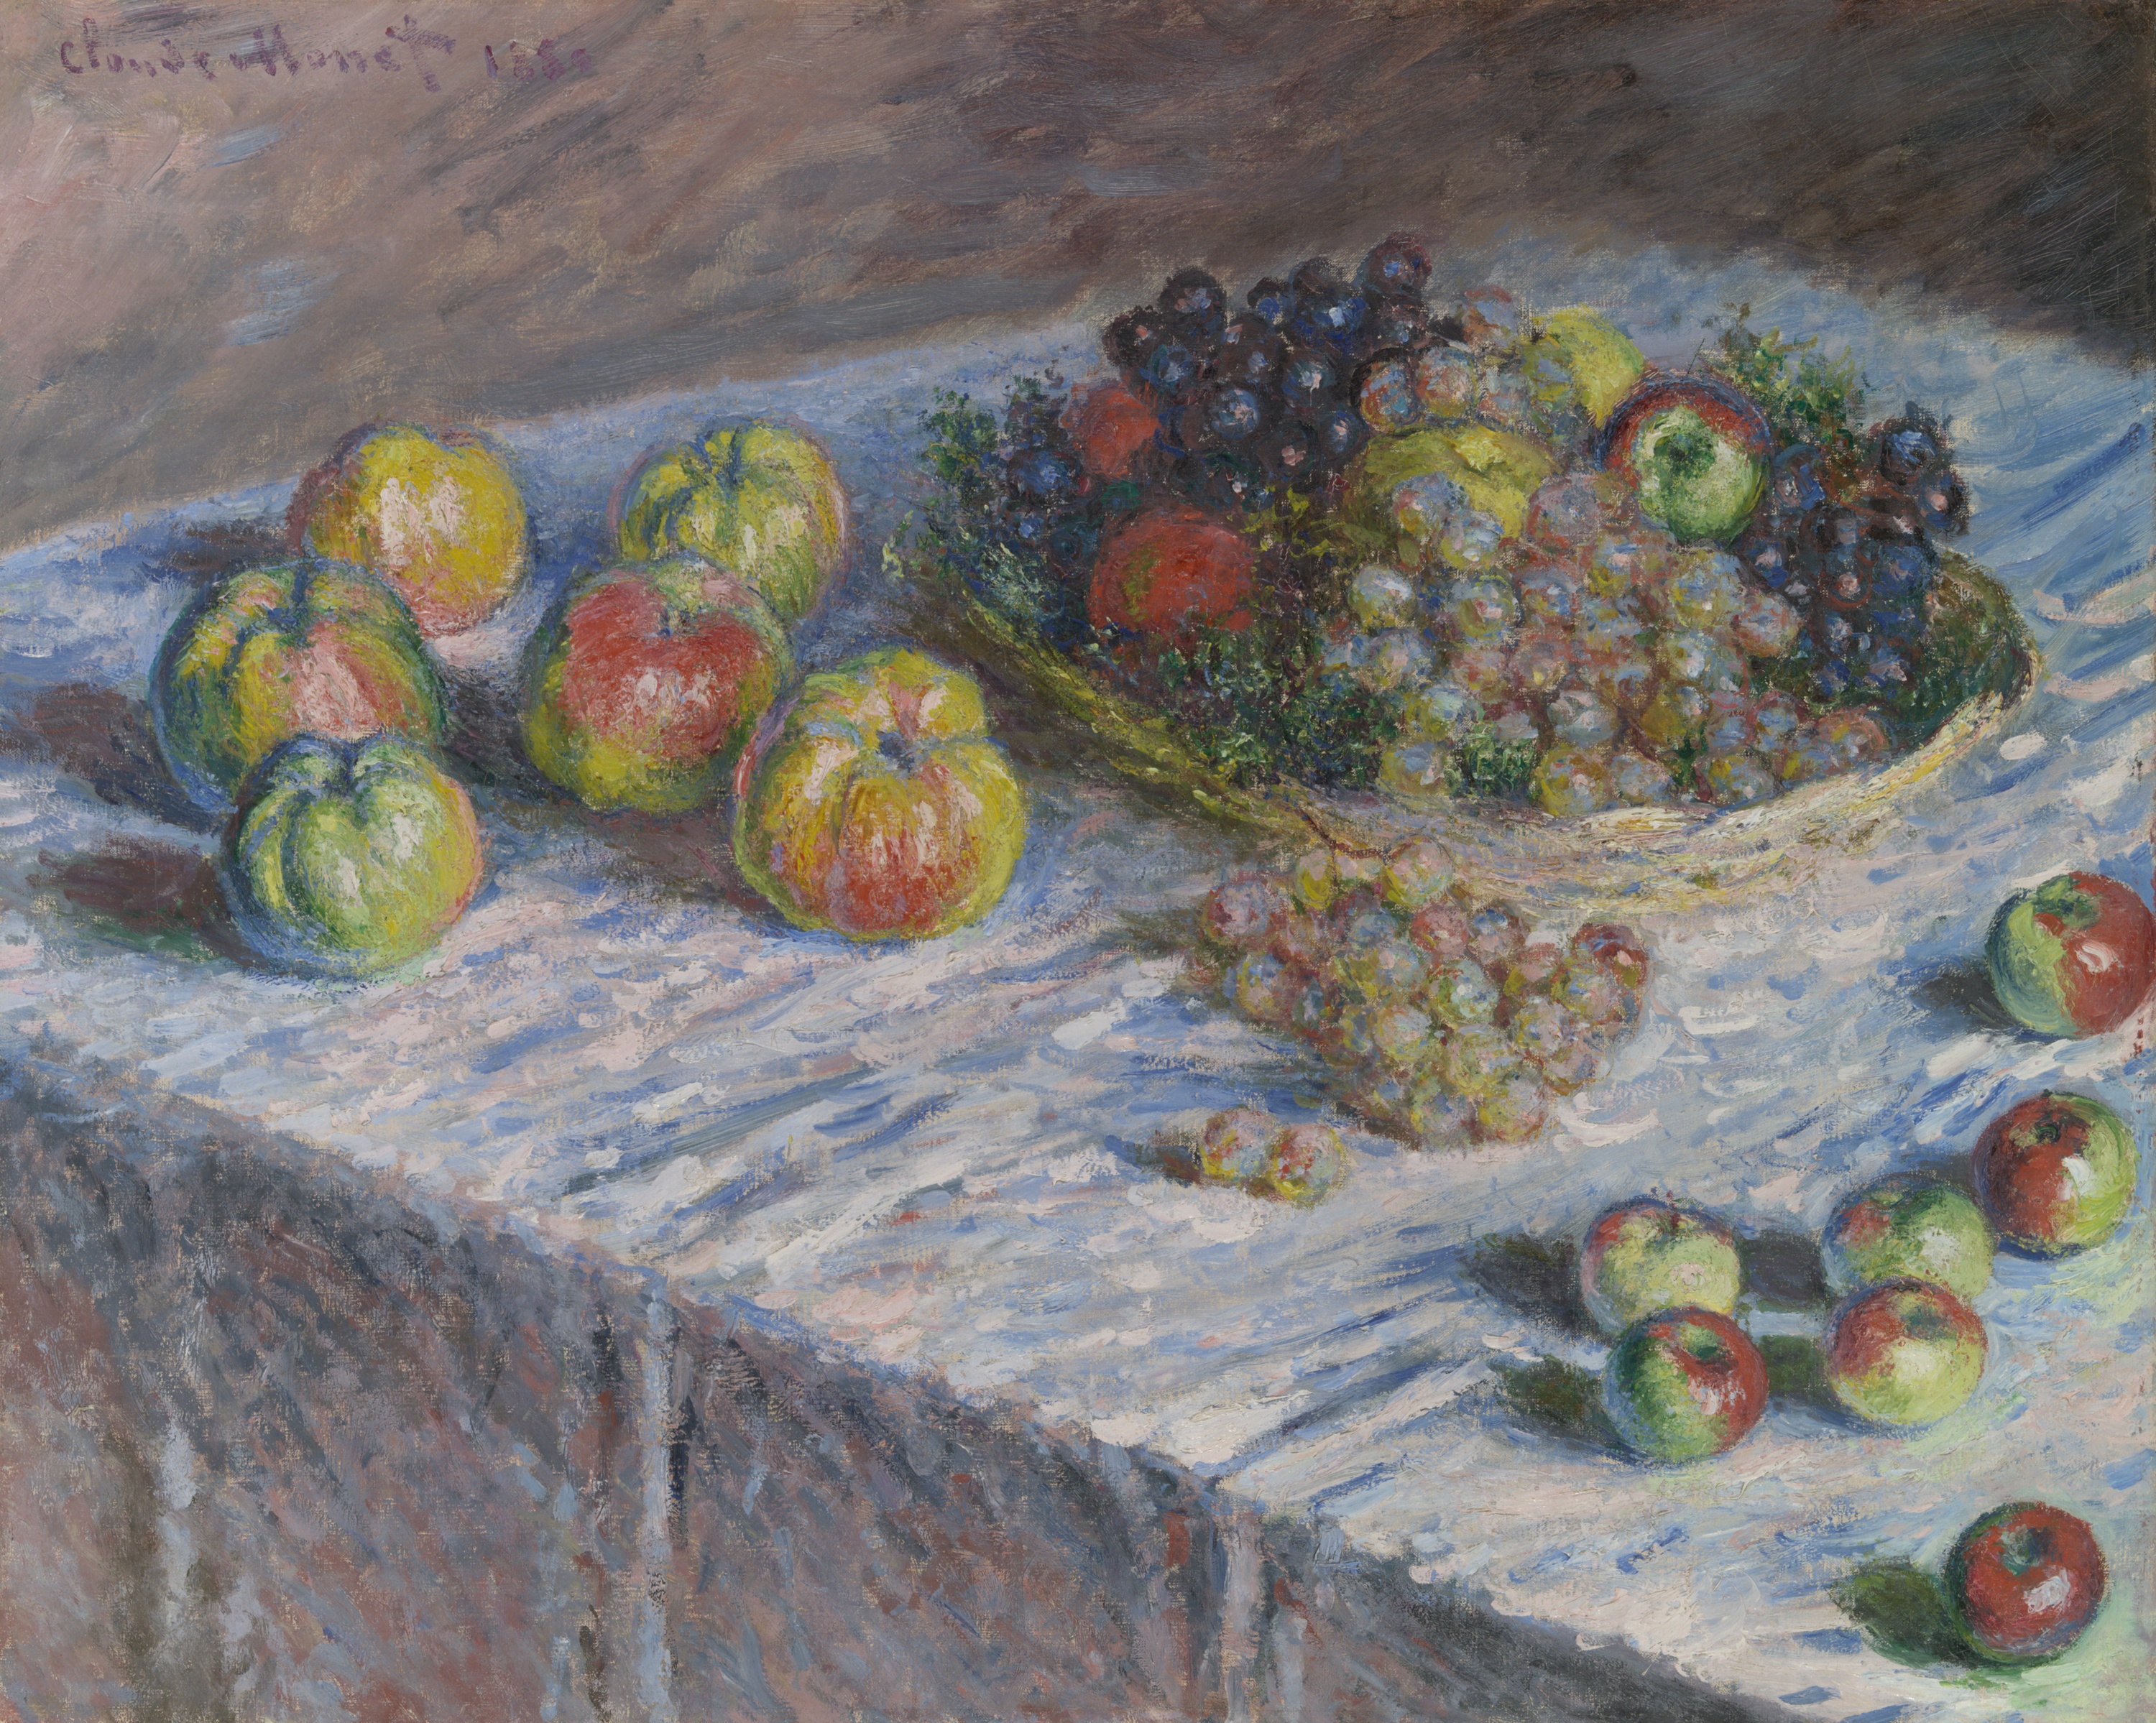 사과와 포도(Apples and Grapes) by Claude Monet - 1880 - 66.5 cm × 82.5 cm 